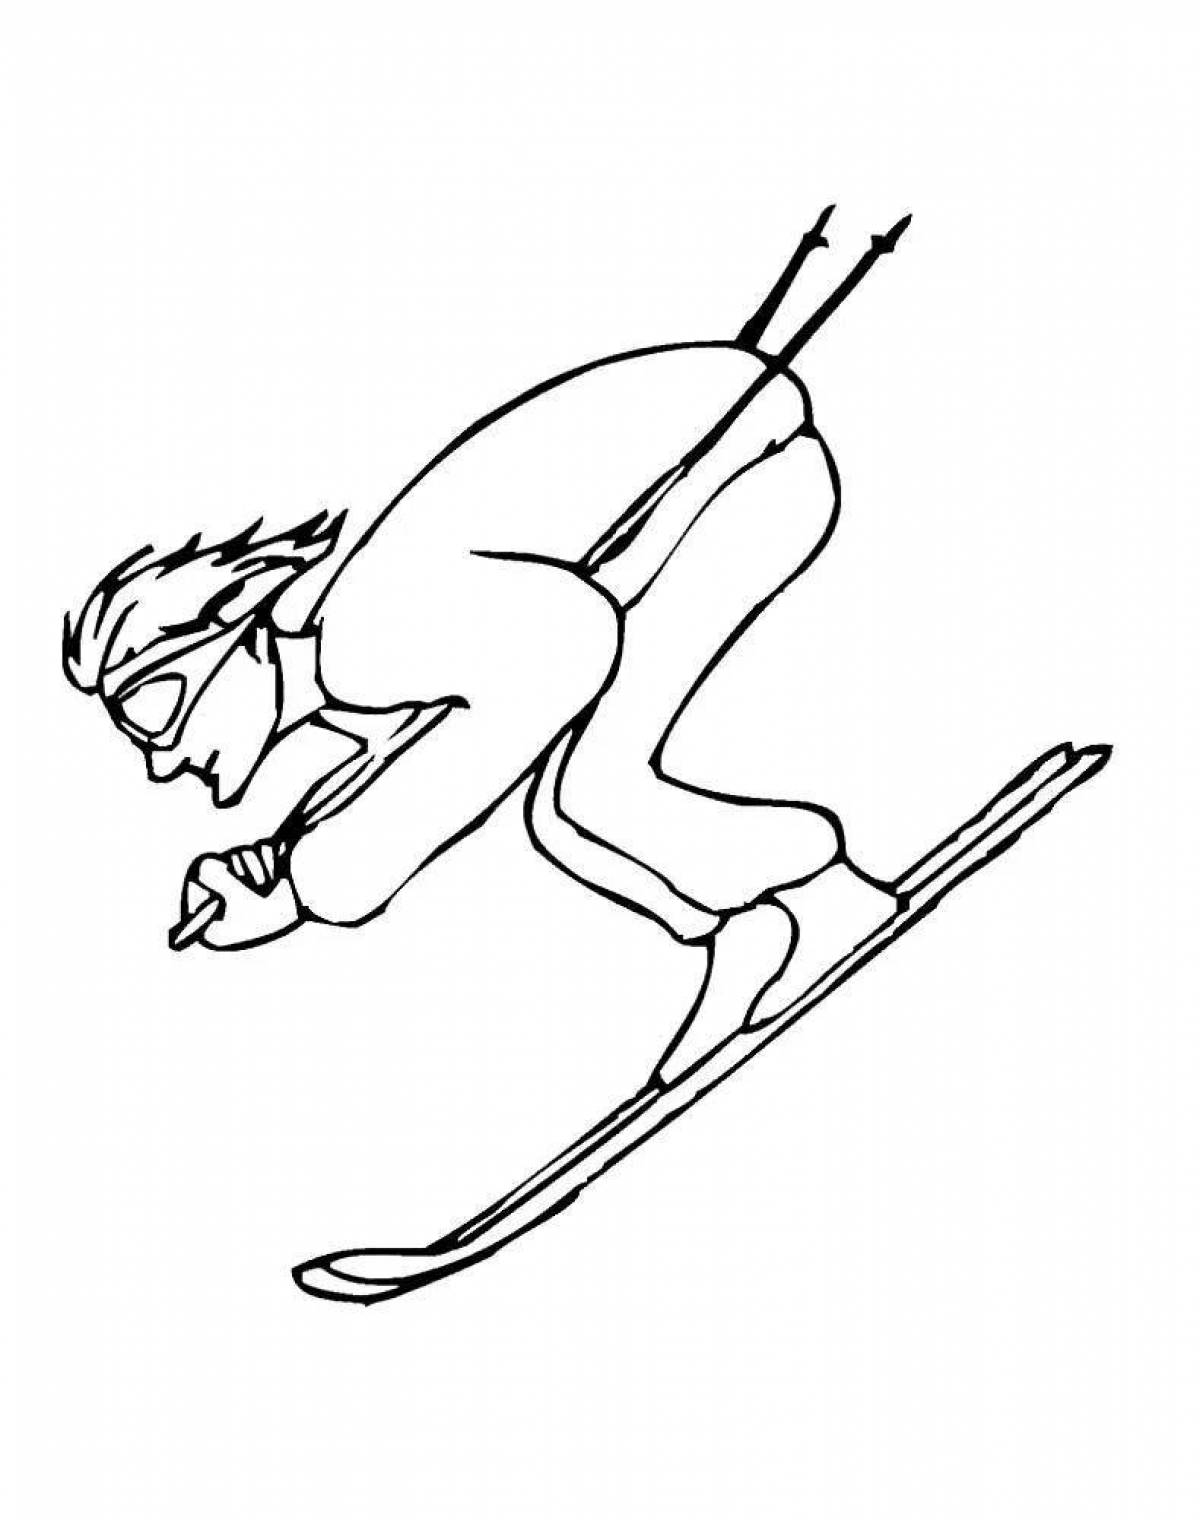 Динамичный лыжник в движении